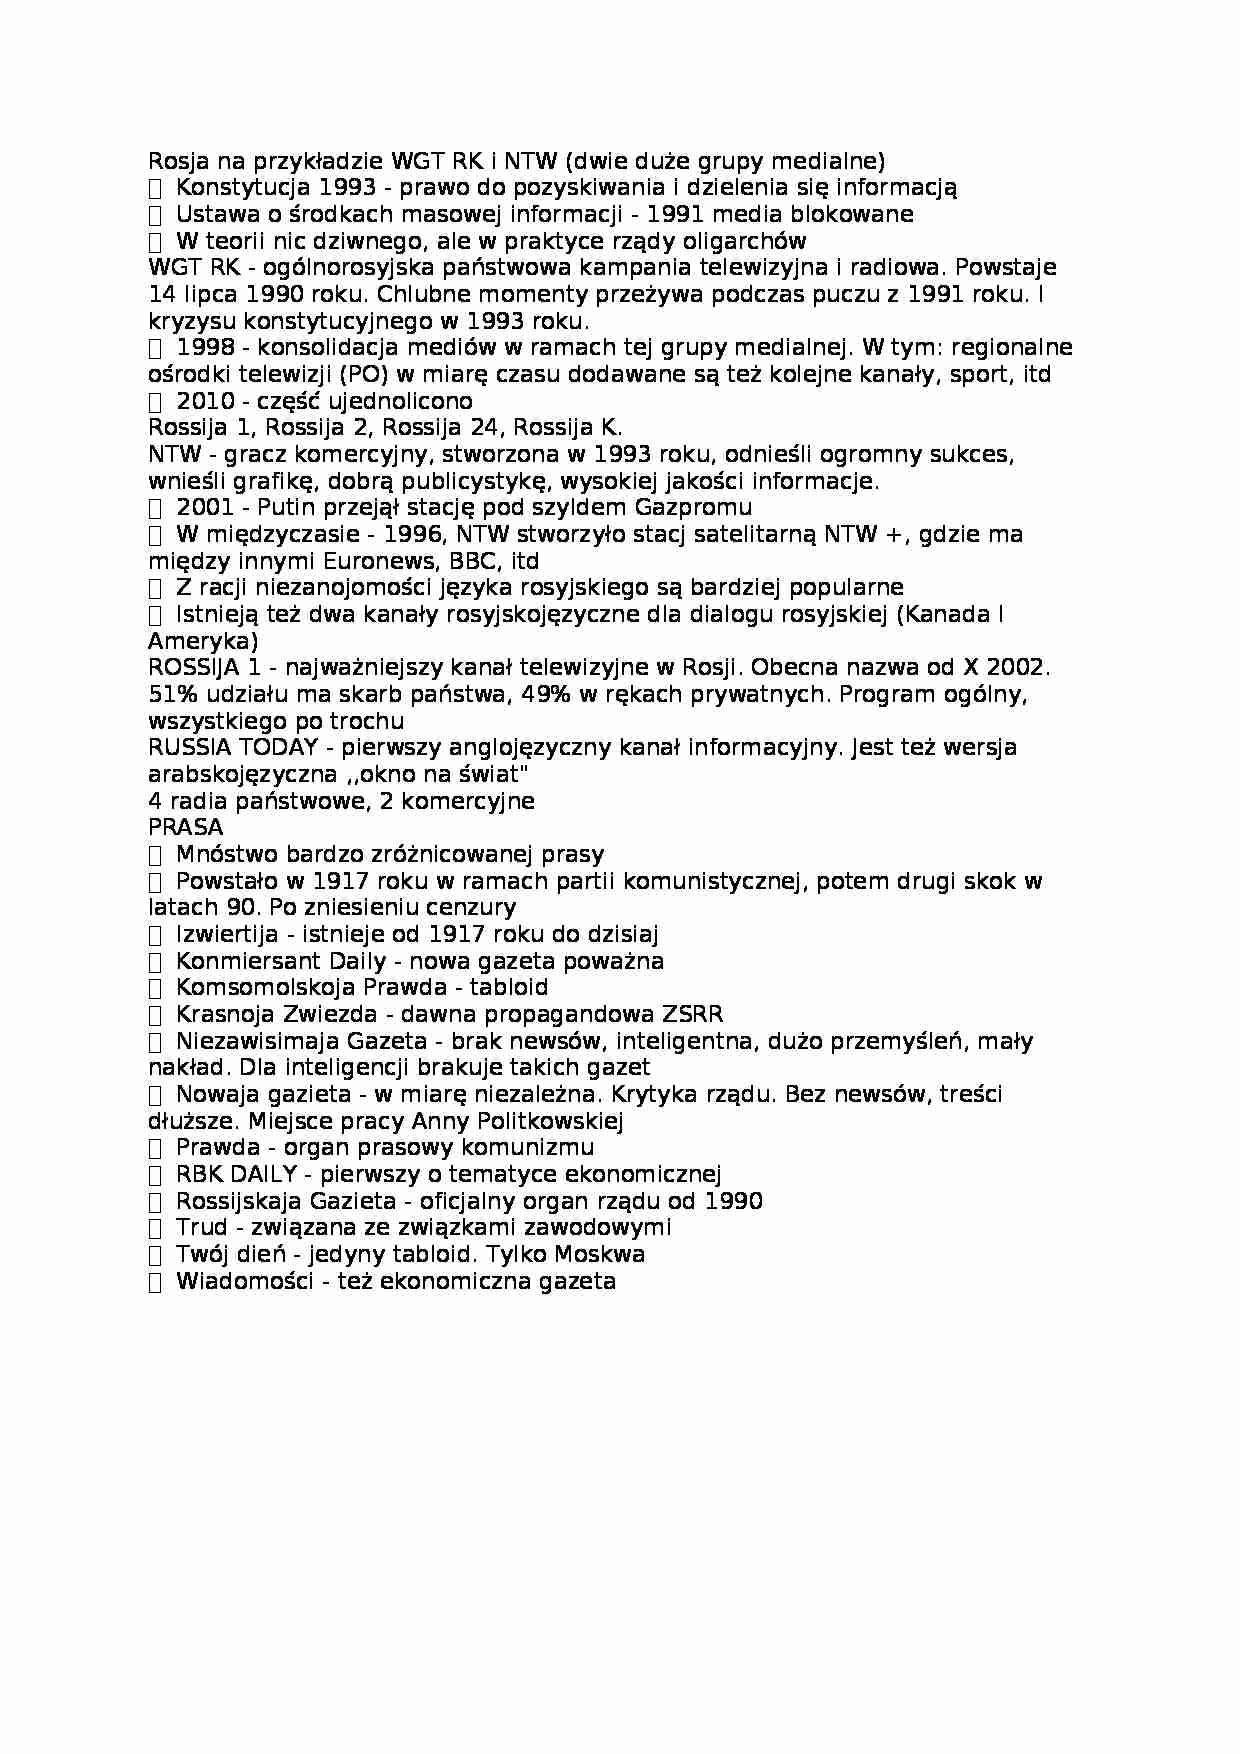  Systemy medialne - Rosja na przykładzie WGT RK i NTW - omówienie  - strona 1